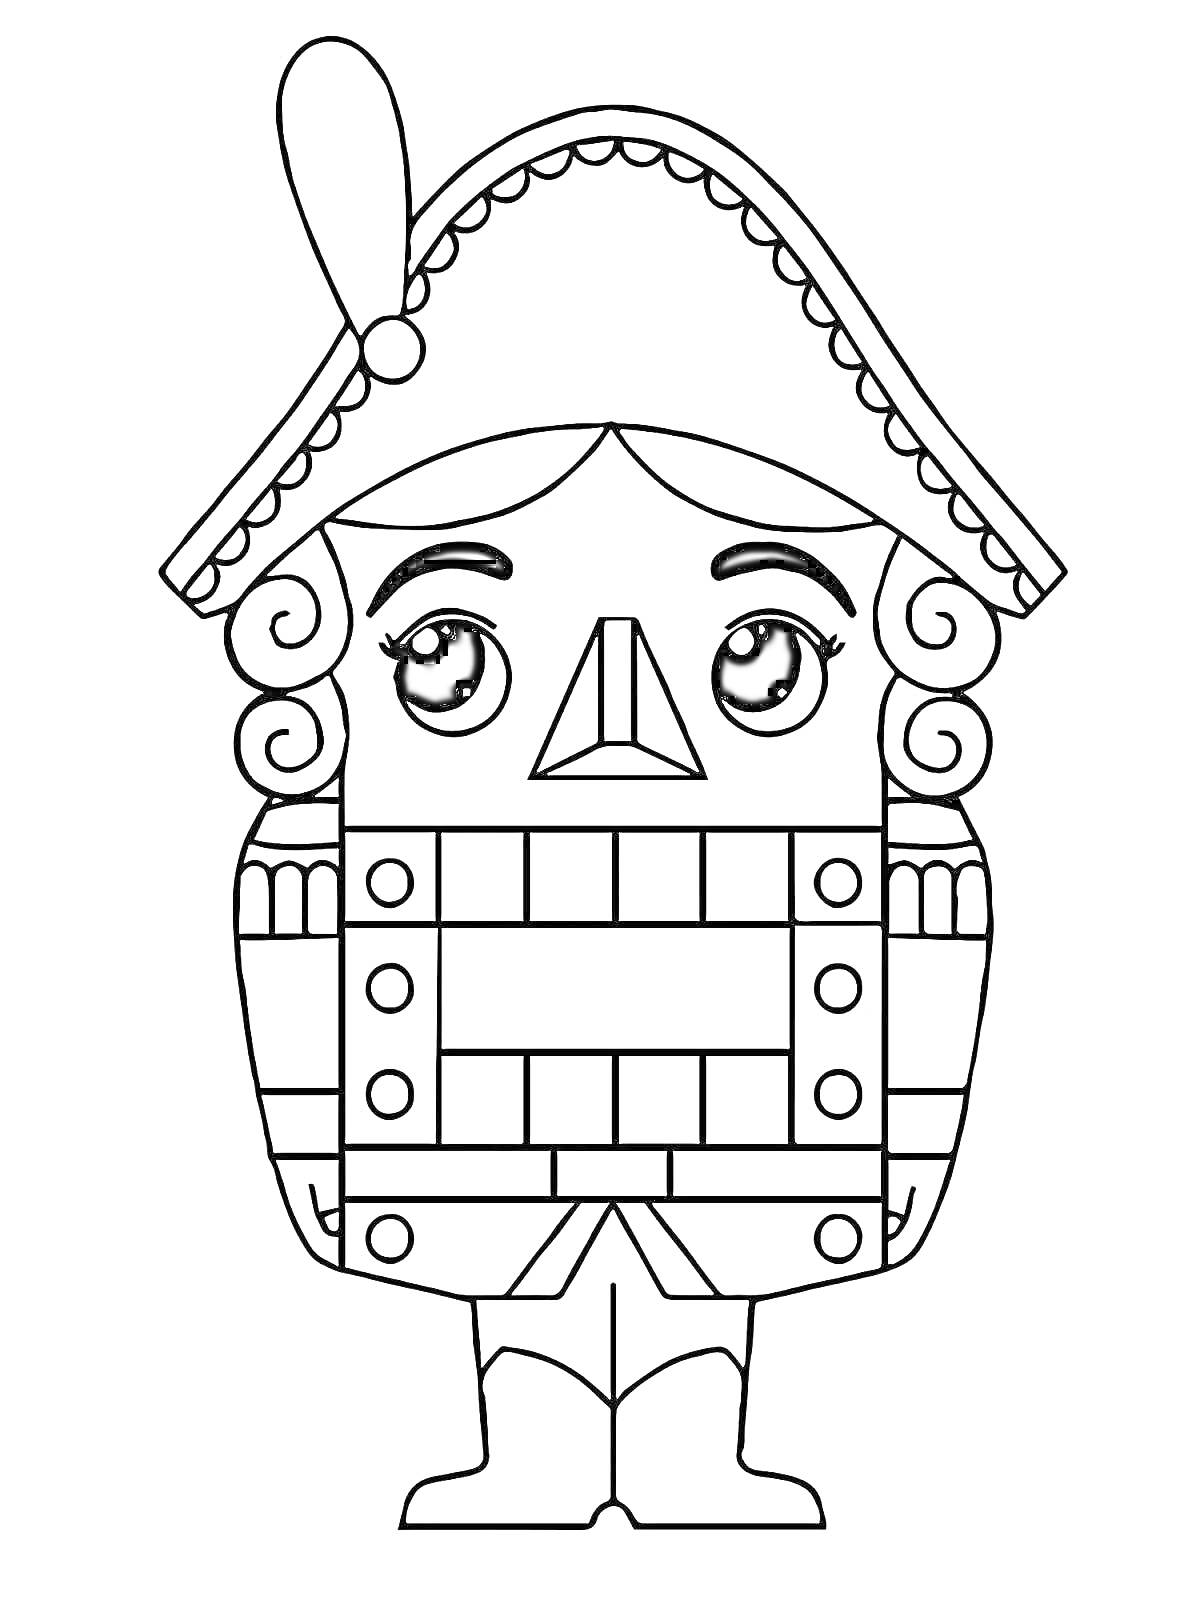 Раскраска Щелкунчик в шляпе с пером, с квадратным и прямоугольным узором на туловище, с кудрями и в сапогах